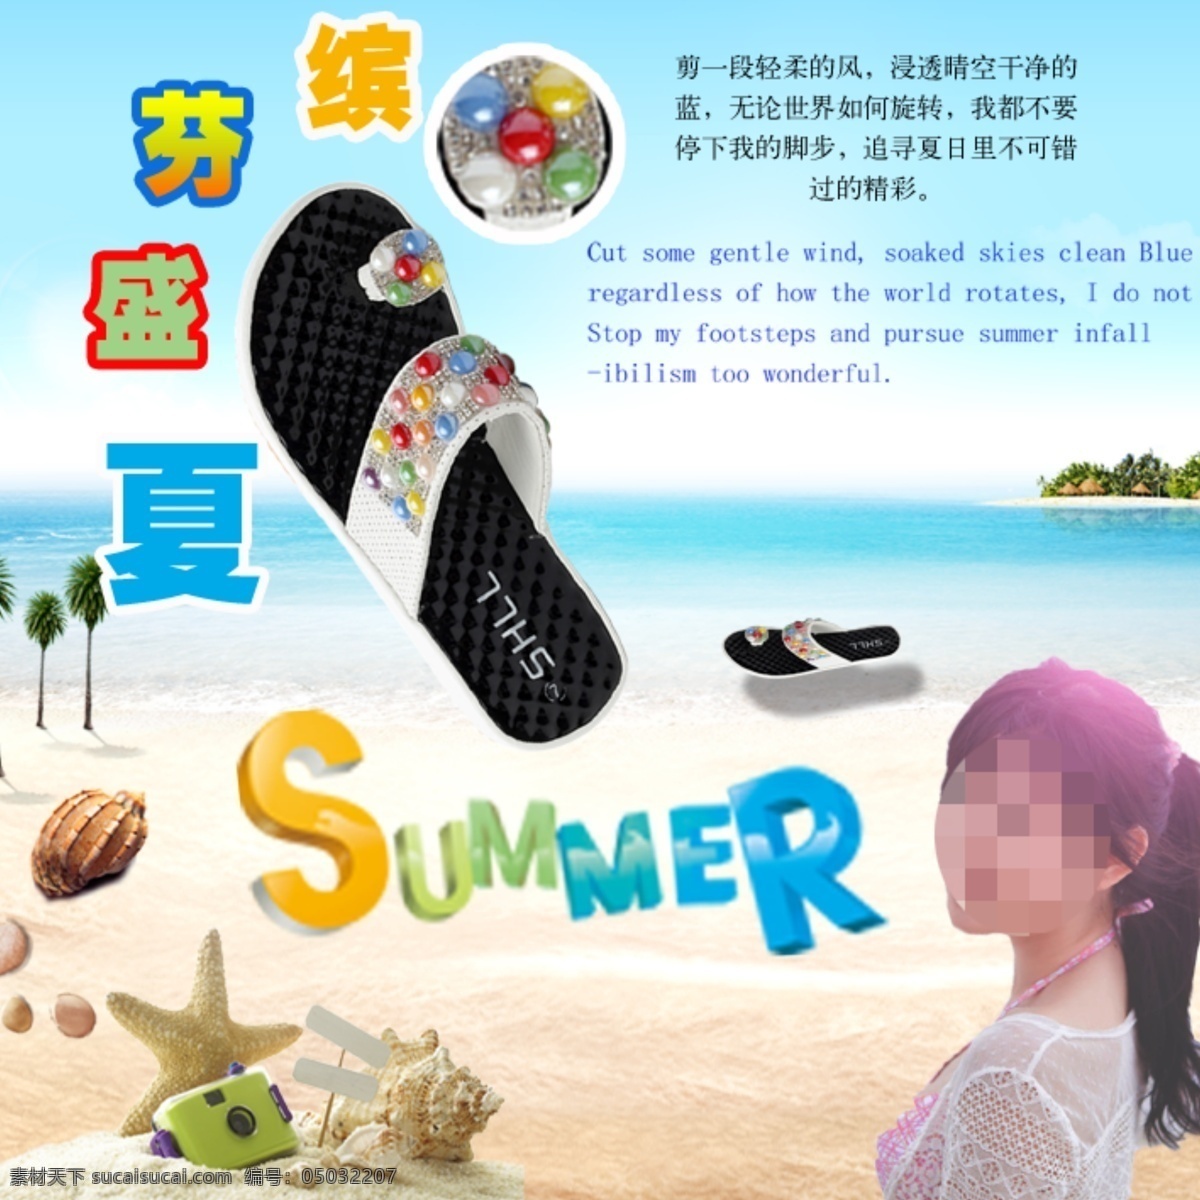 缤纷 盛夏 潮 款 女鞋 summer 沙滩 夏季女鞋 原创设计 原创海报